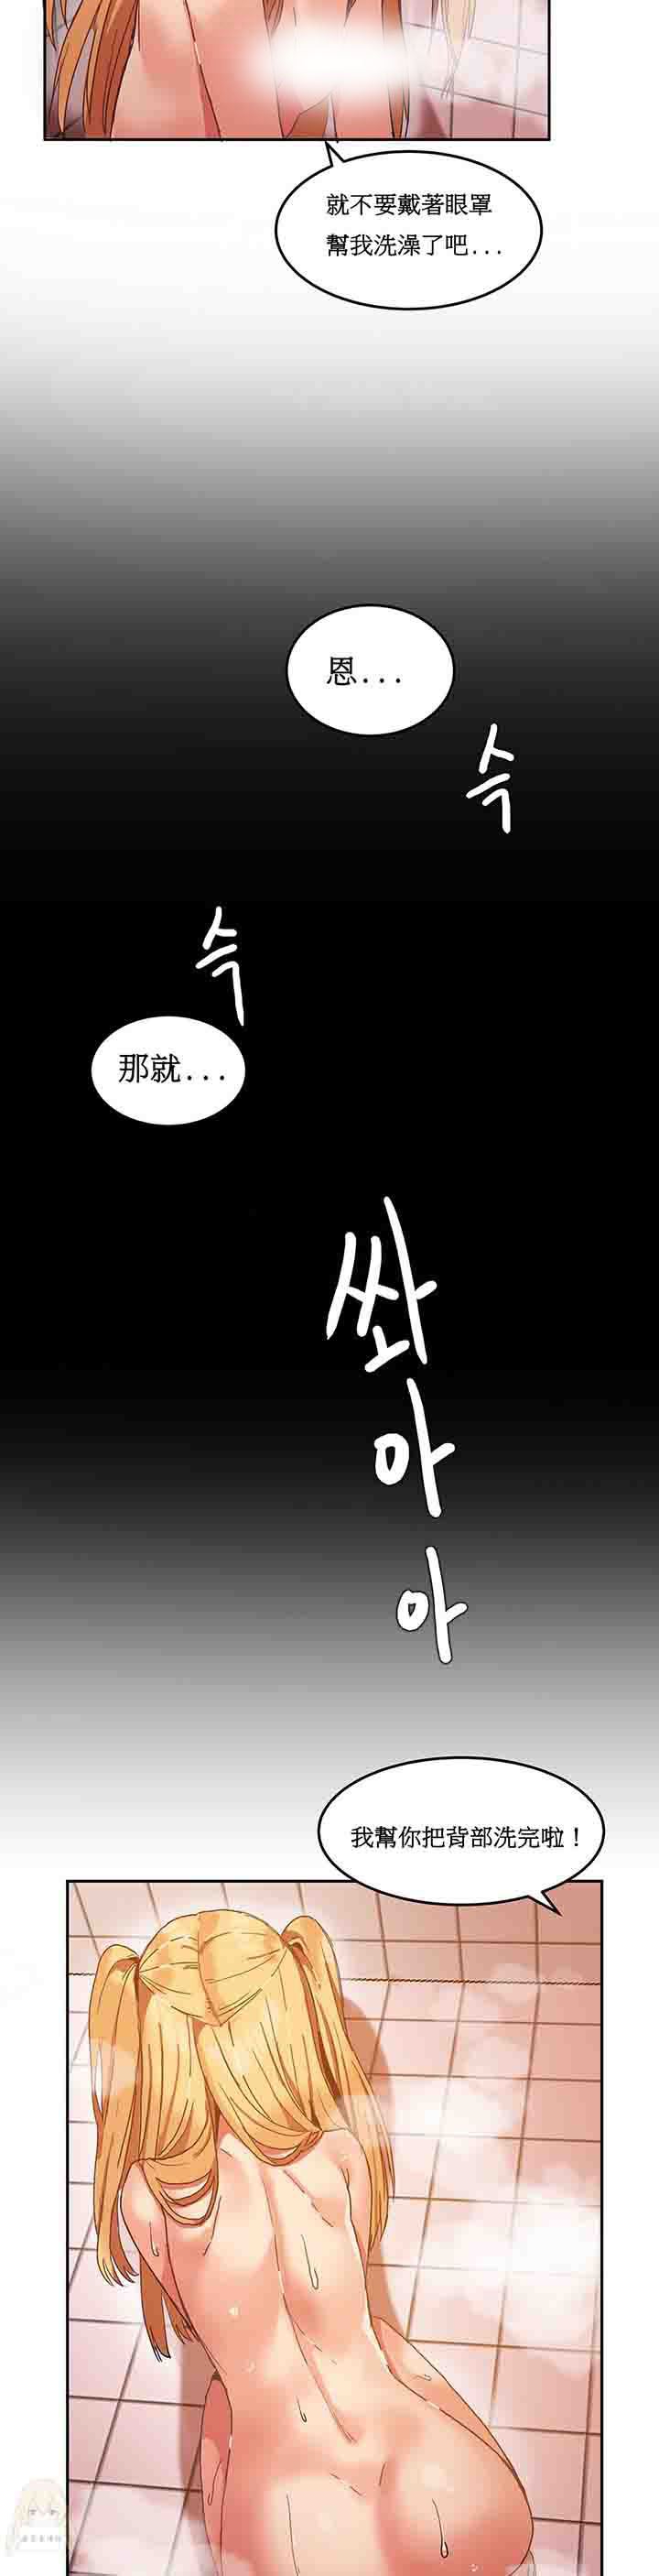 韩国污漫画 寄宿公寓-陰氣之洞 第8话 8